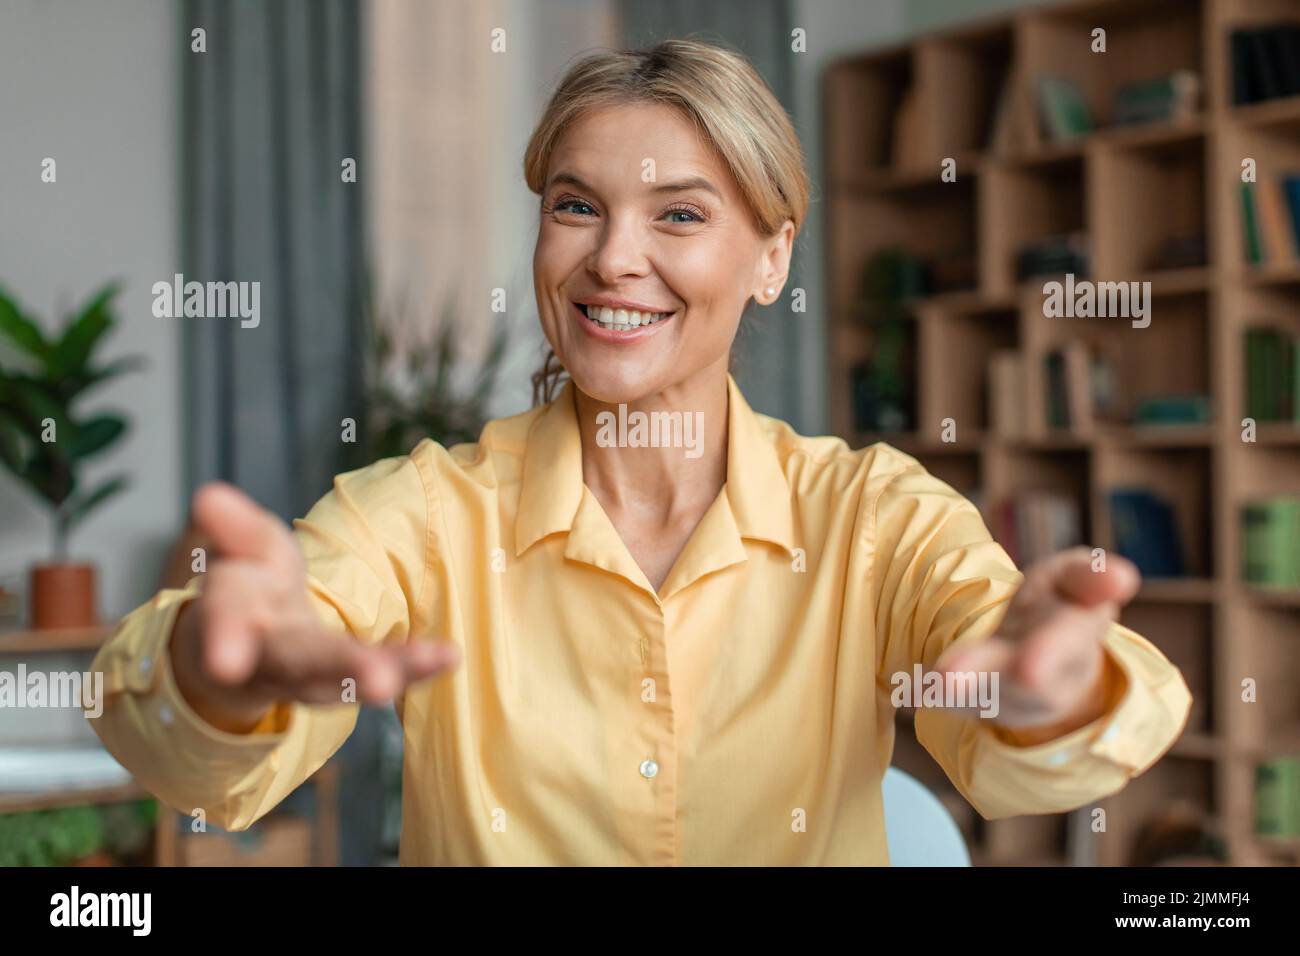 Ritratto della testa di una donna sorridente che parla alla macchina fotografica, webinar principale dell'insegnante, che si diverti con una piacevole conversazione Foto Stock